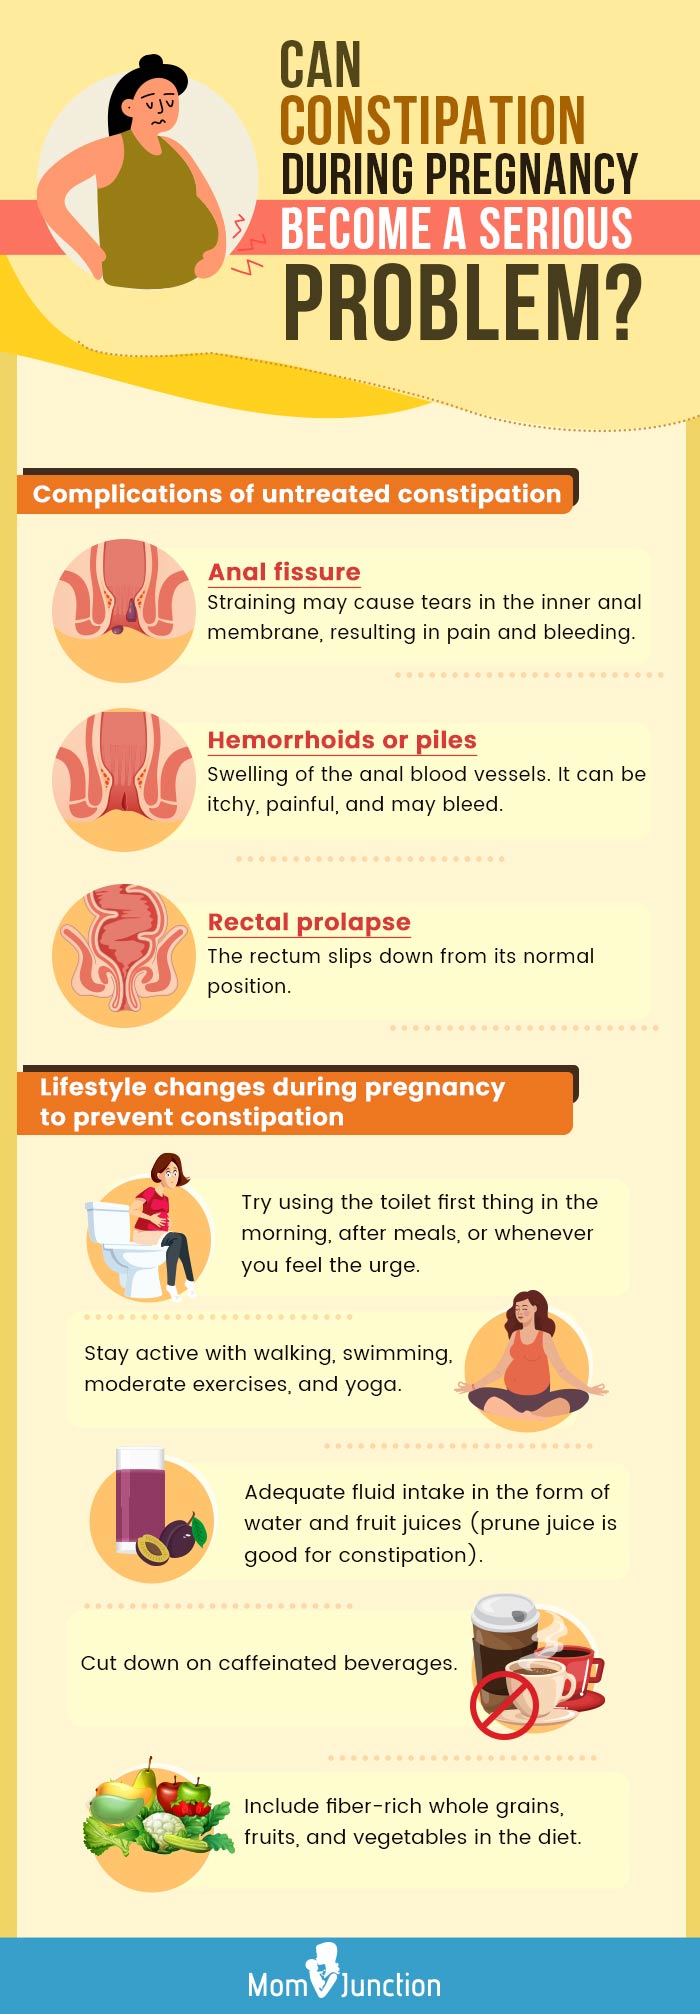 怀孕期间便秘会成为一个严重的问题吗manbet安卓版(信息图)